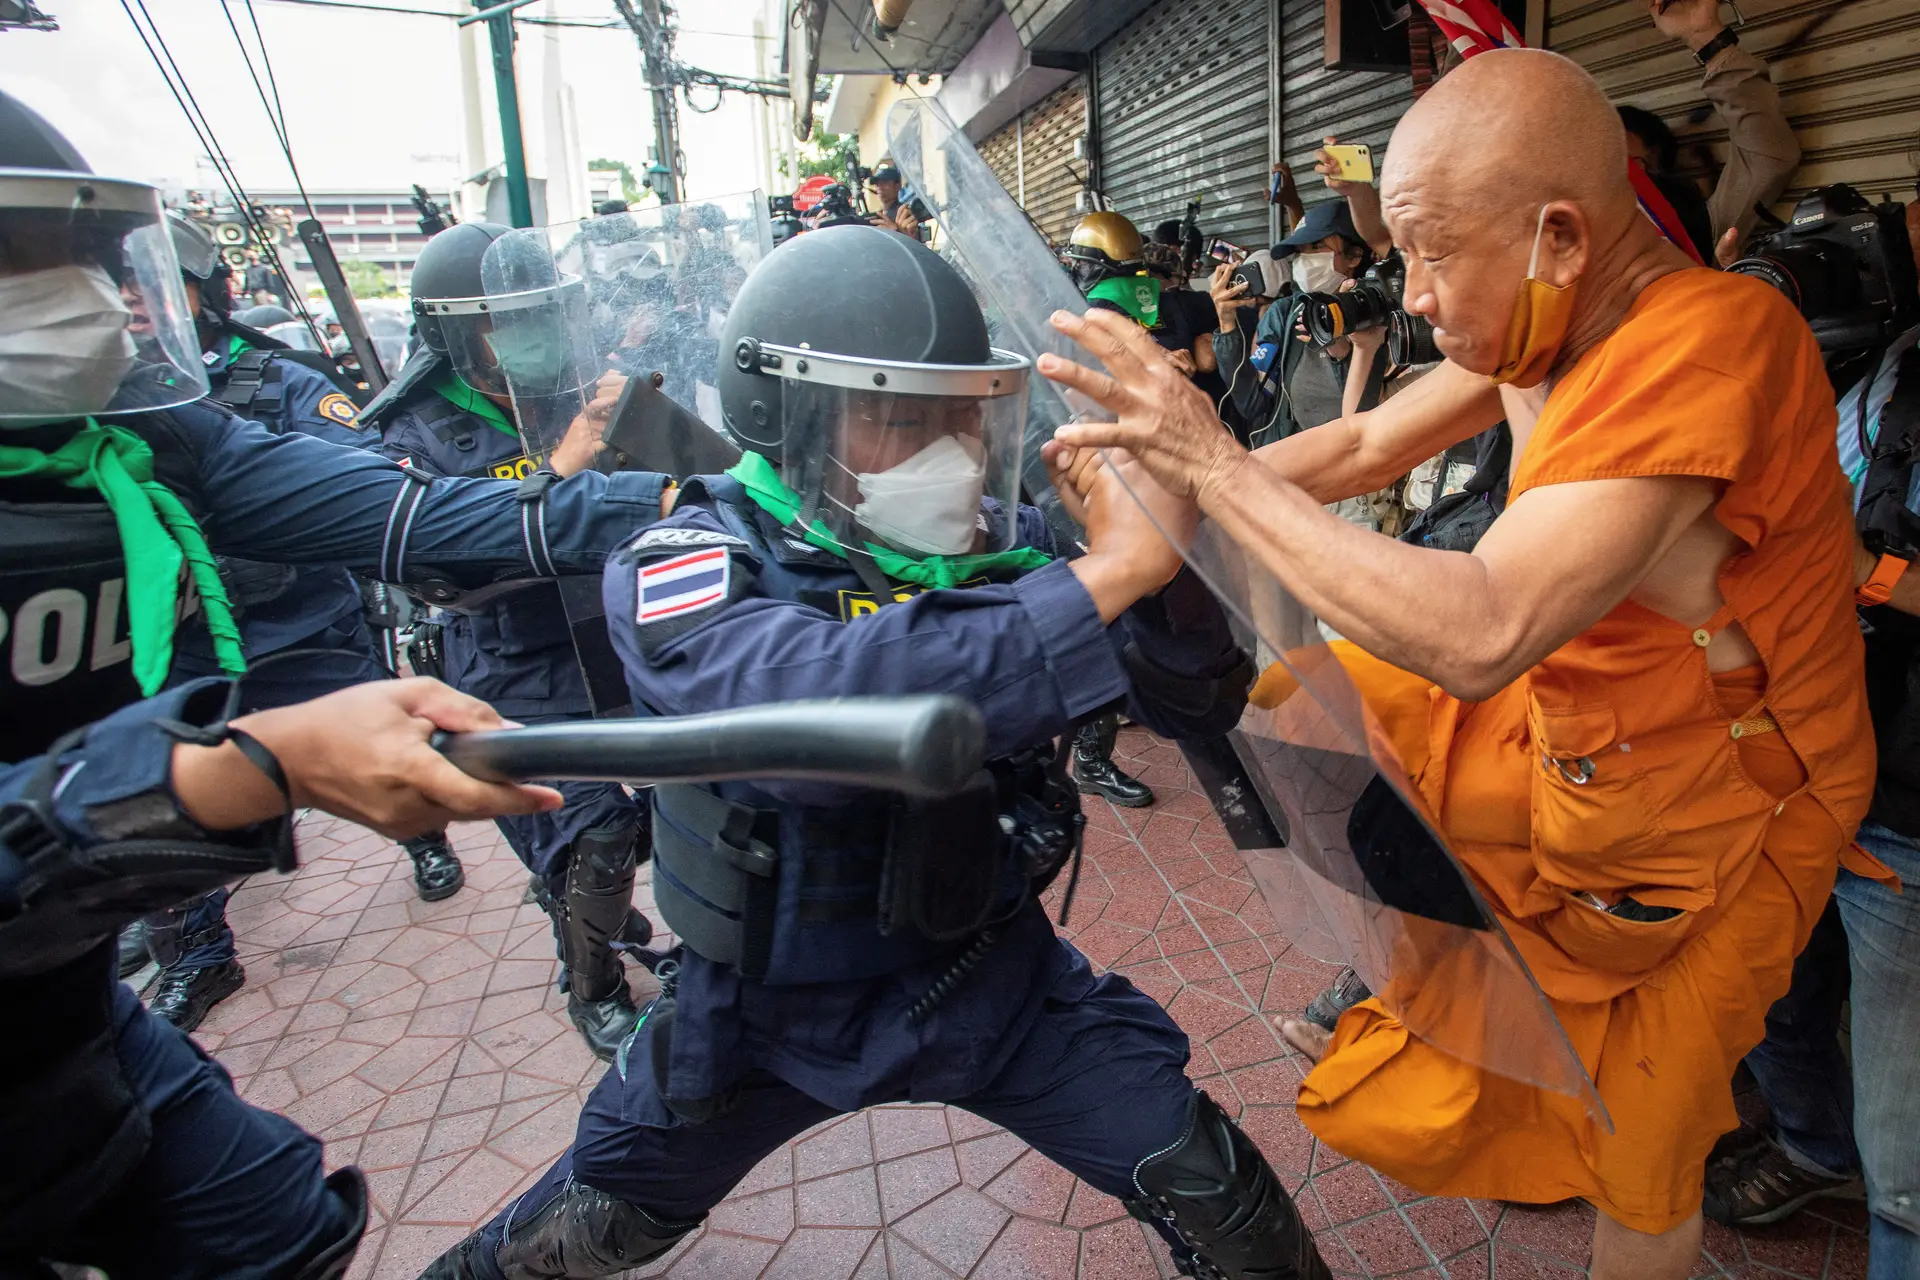 PROTESTO. Manifestantes e polícia: um confronto que se replica mundo fora. Na Tailândia, o pretexto foi uma cimeira económica